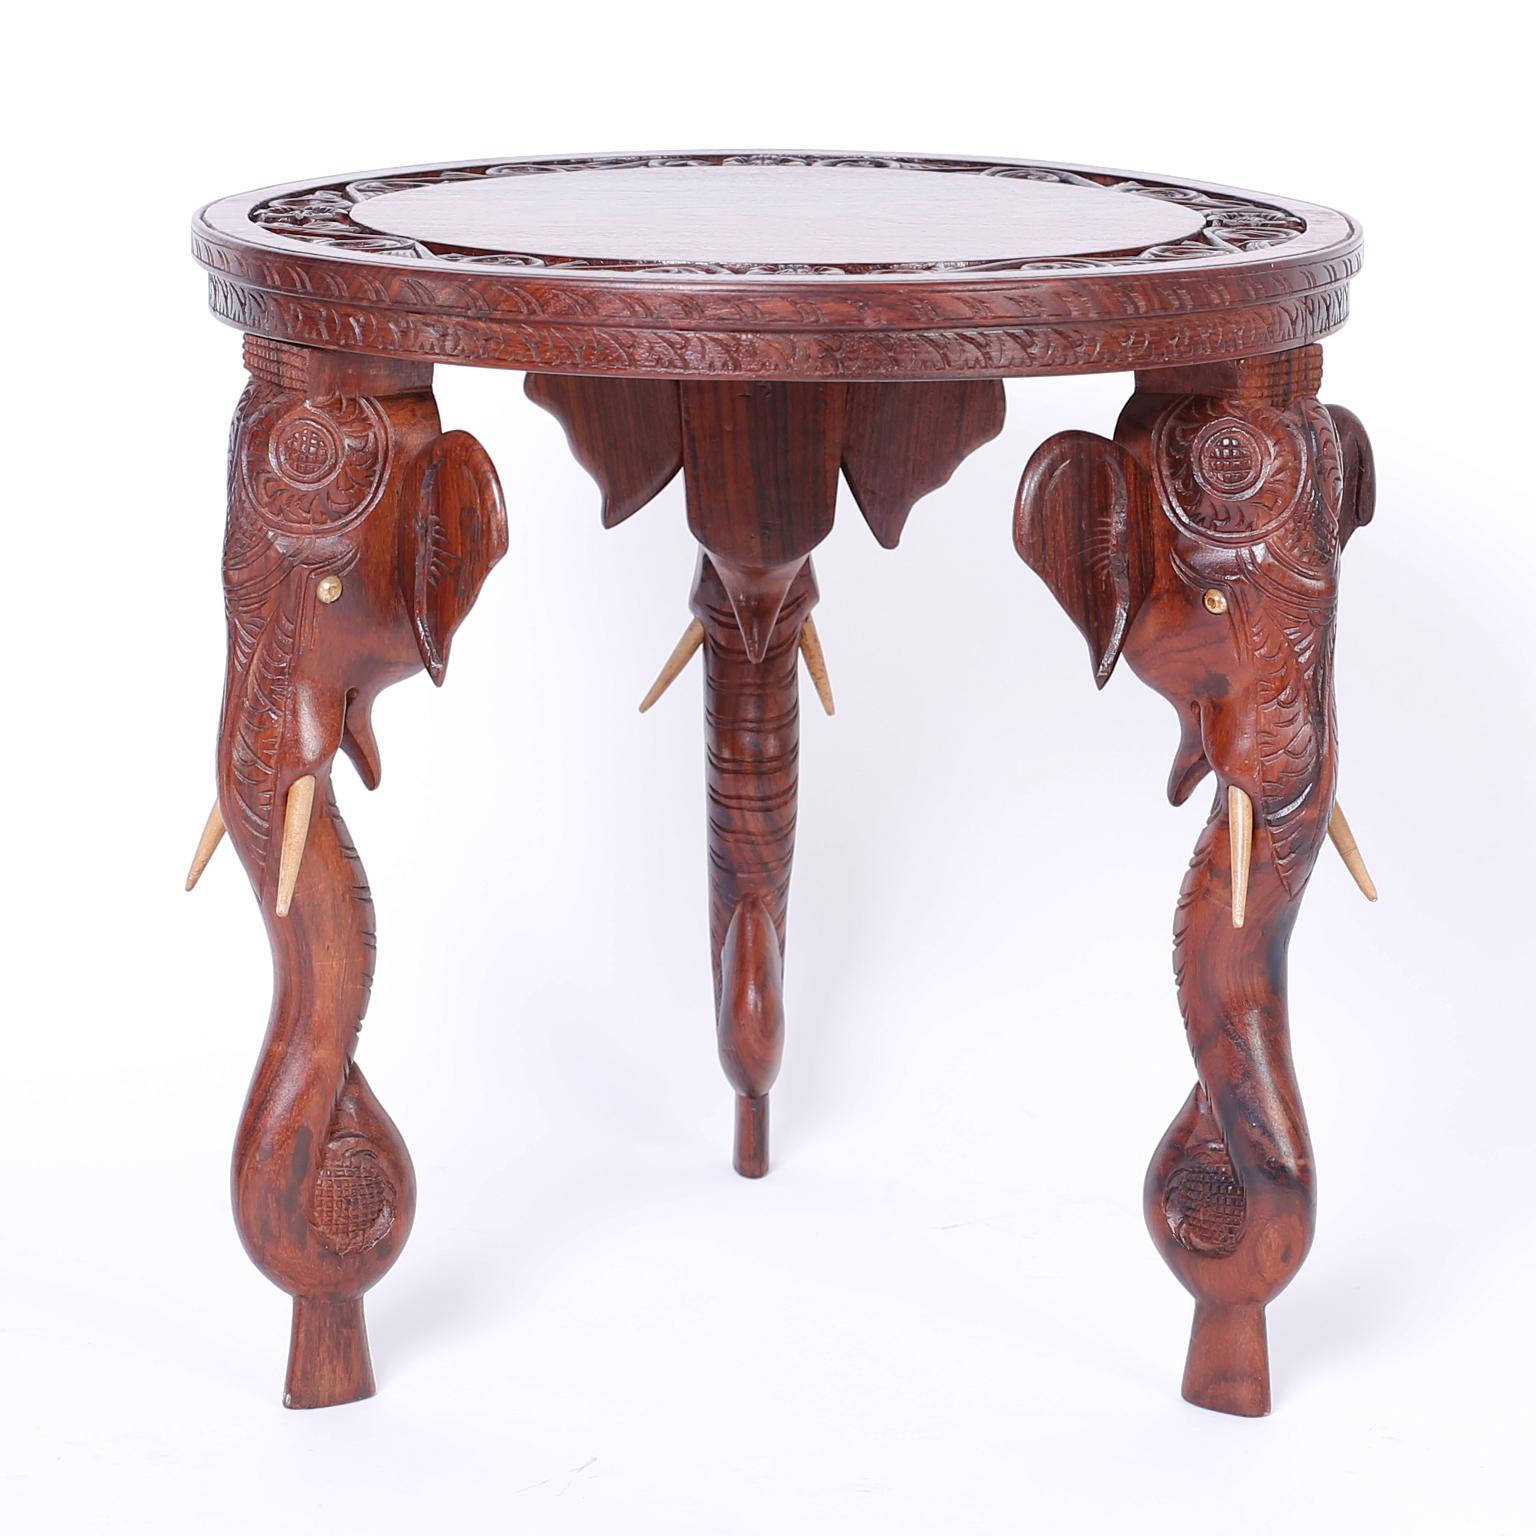 Exotisches Paar runder anglo-indischer Palisandertische mit geschnitzten Blumenbordüren auf den Tischplatten und drei geschnitzten Elefantenkopfbeinen mit Knochenstoßzähnen.